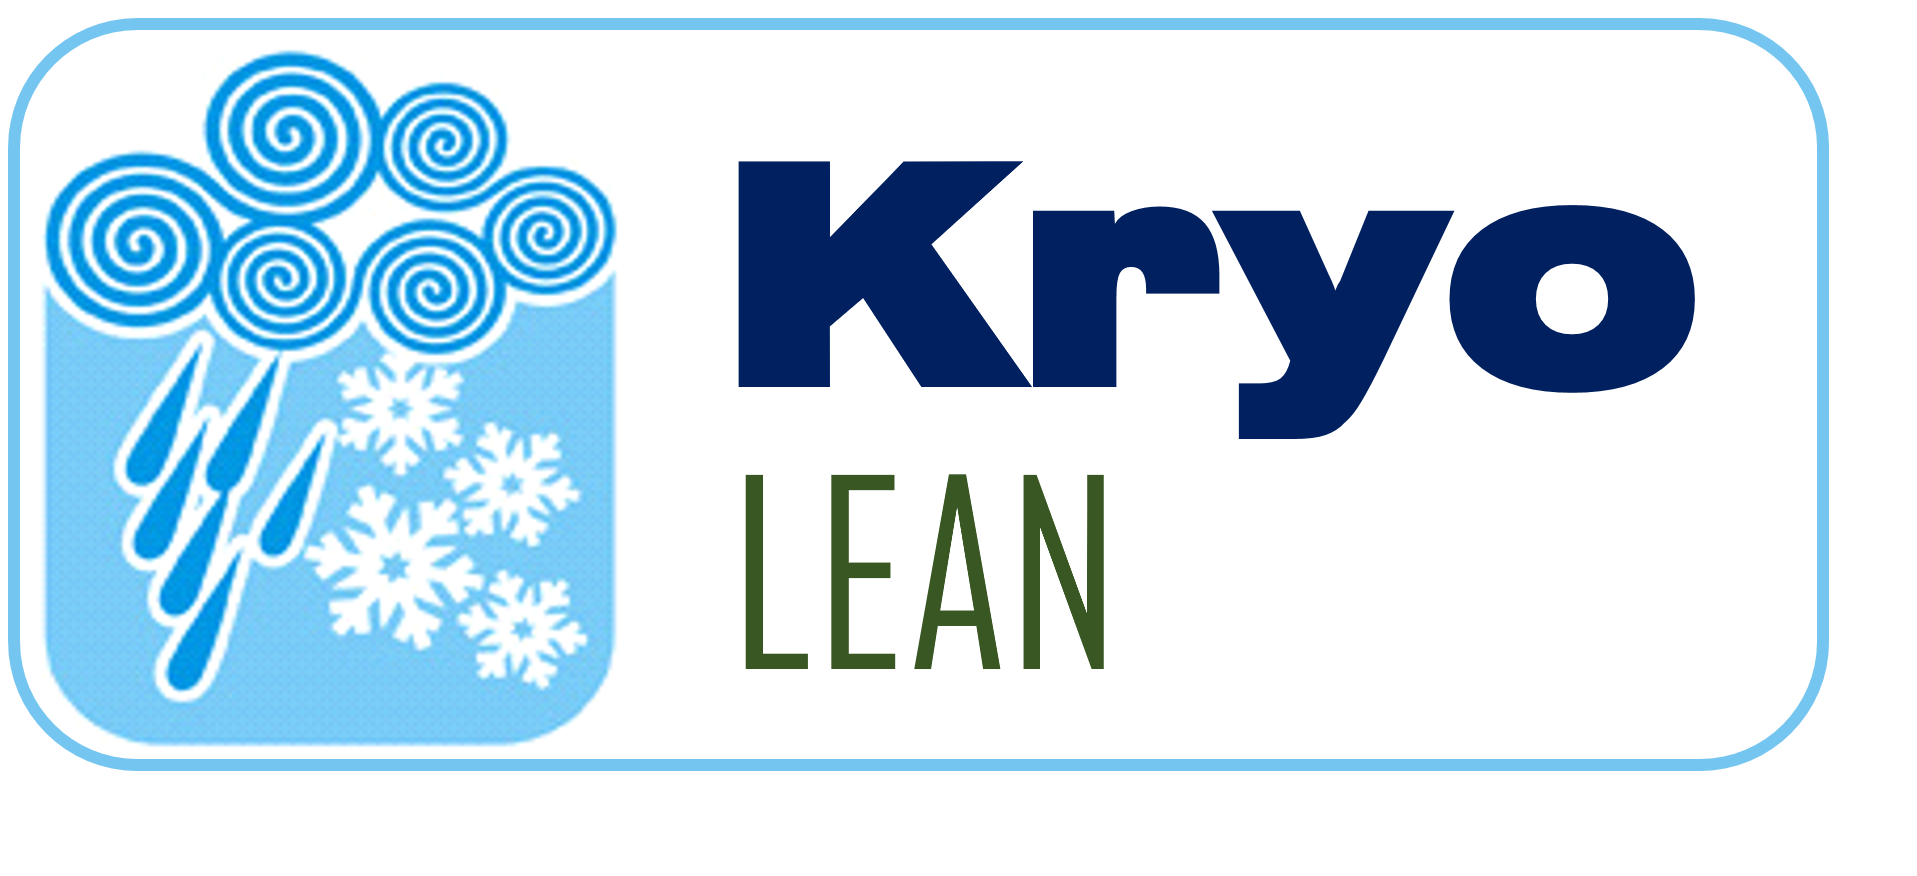 Zum Artikel "KryoLEAN – Nutzung CO2-basierter, kryogener Technologie zur Integration von Zerspanung und Reinigung"